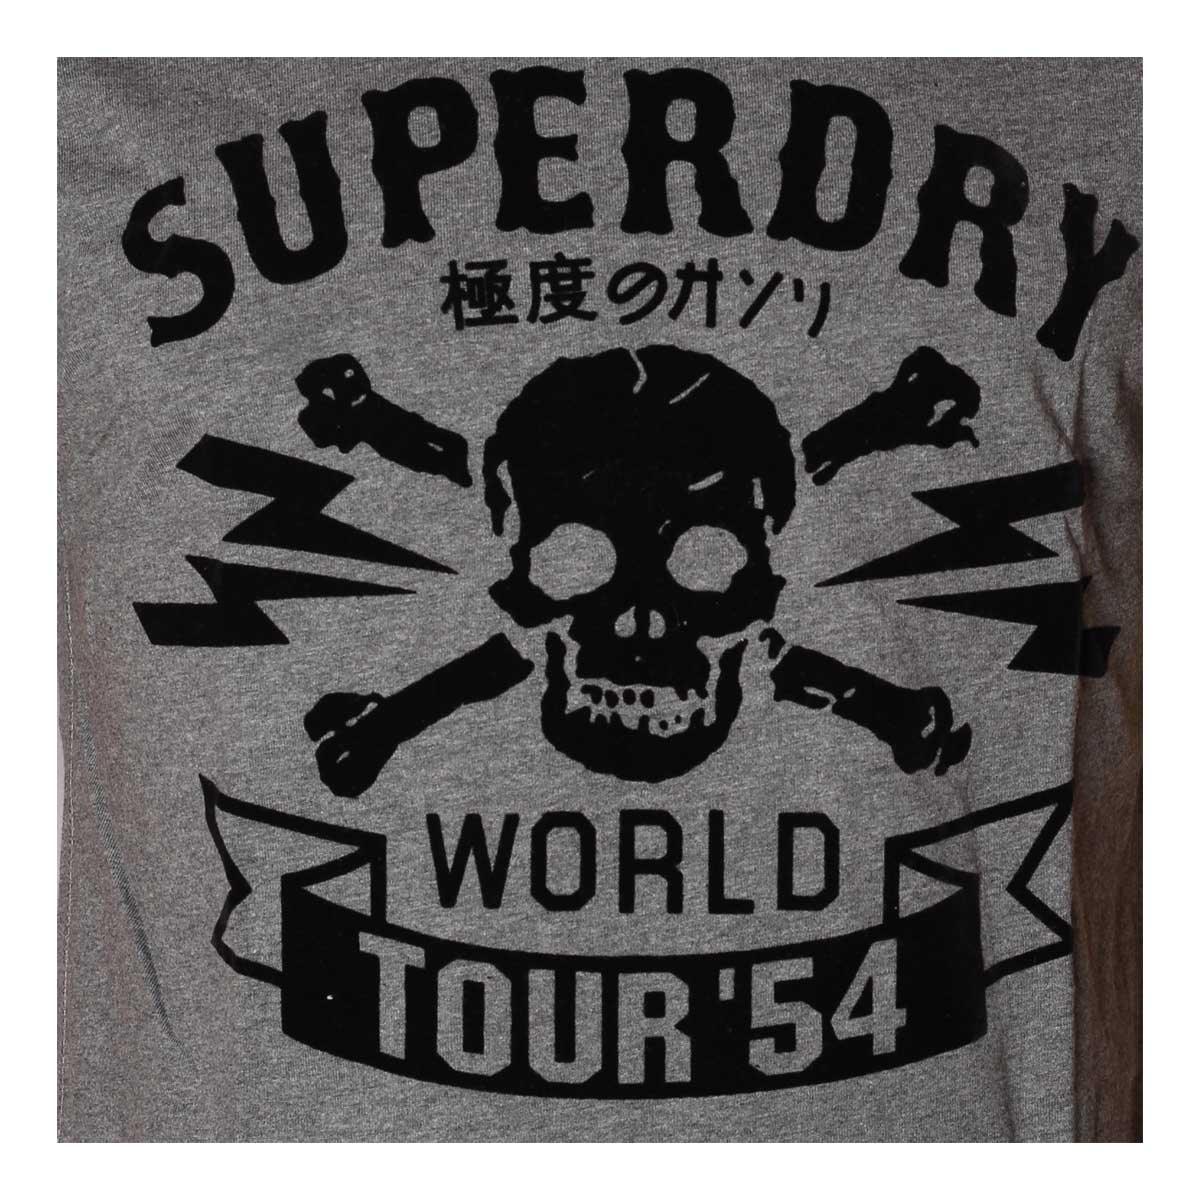 SuperDry World tour 54 T shirt Ash - Obeezi.com